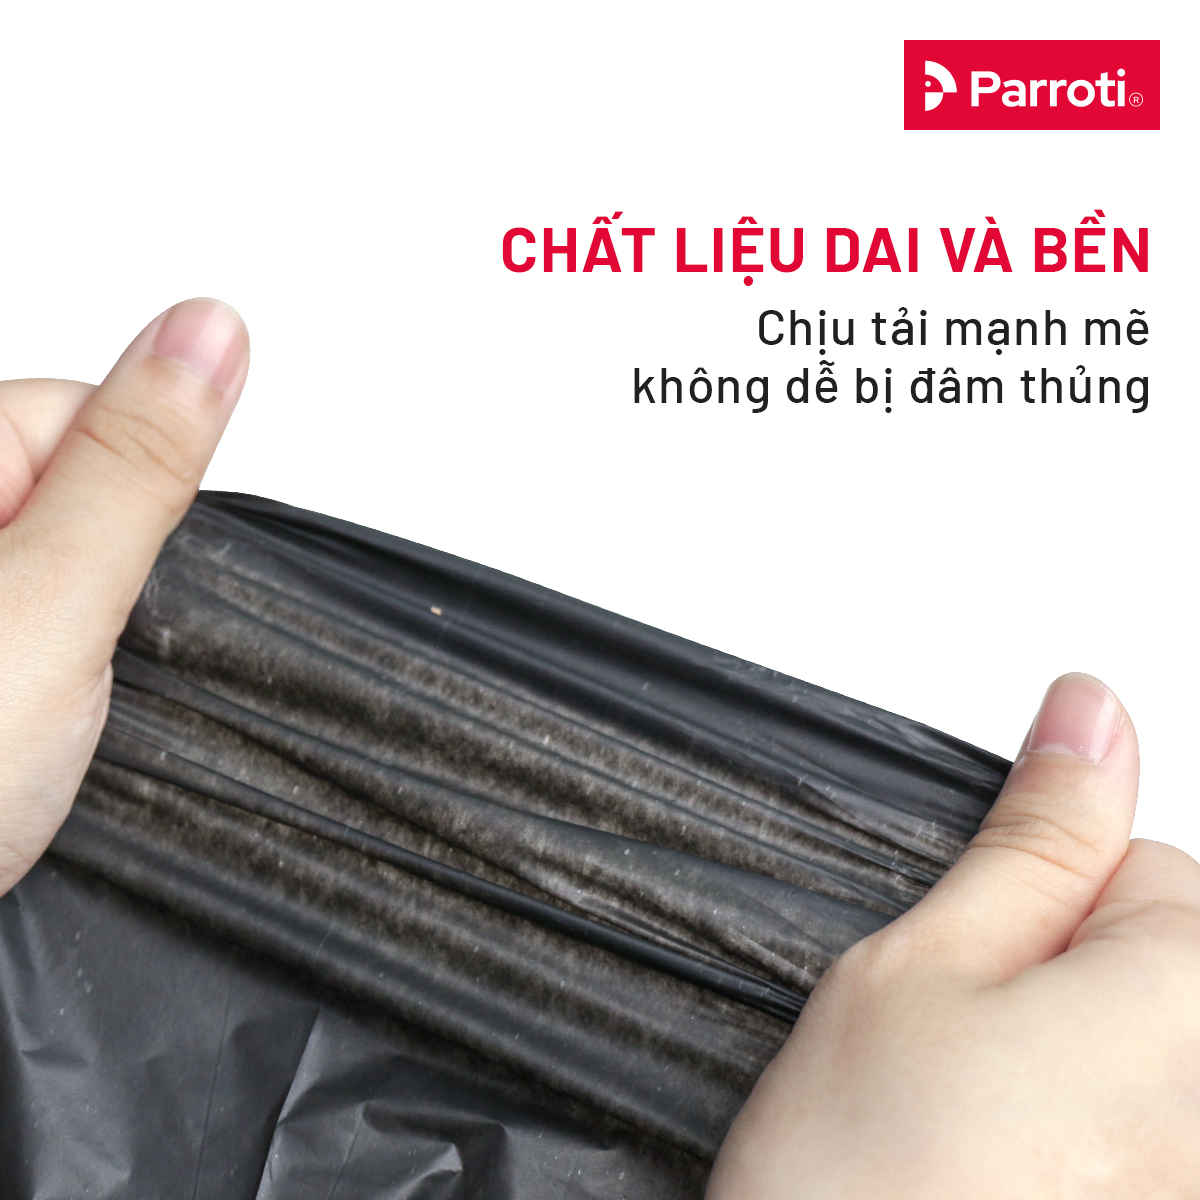 Túi rác miệng bằng Parroti Envi - 1kg/3cuộn - màu đen